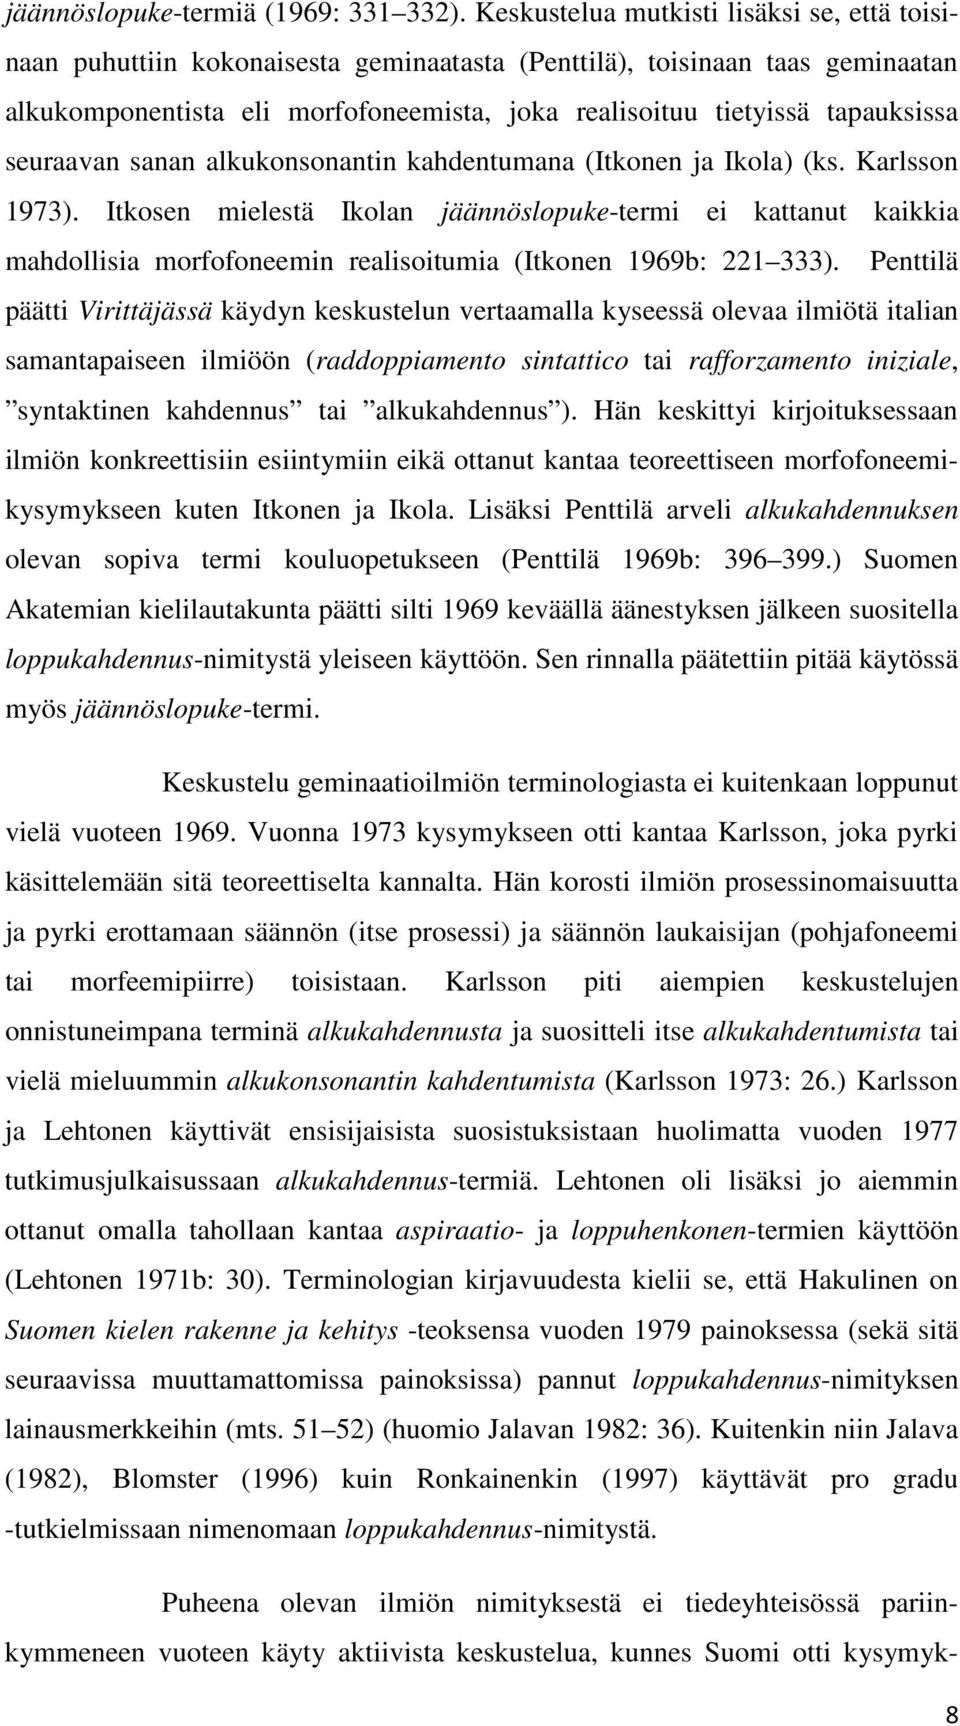 seuraavan sanan alkukonsonantin kahdentumana (Itkonen ja Ikola) (ks. Karlsson 1973).